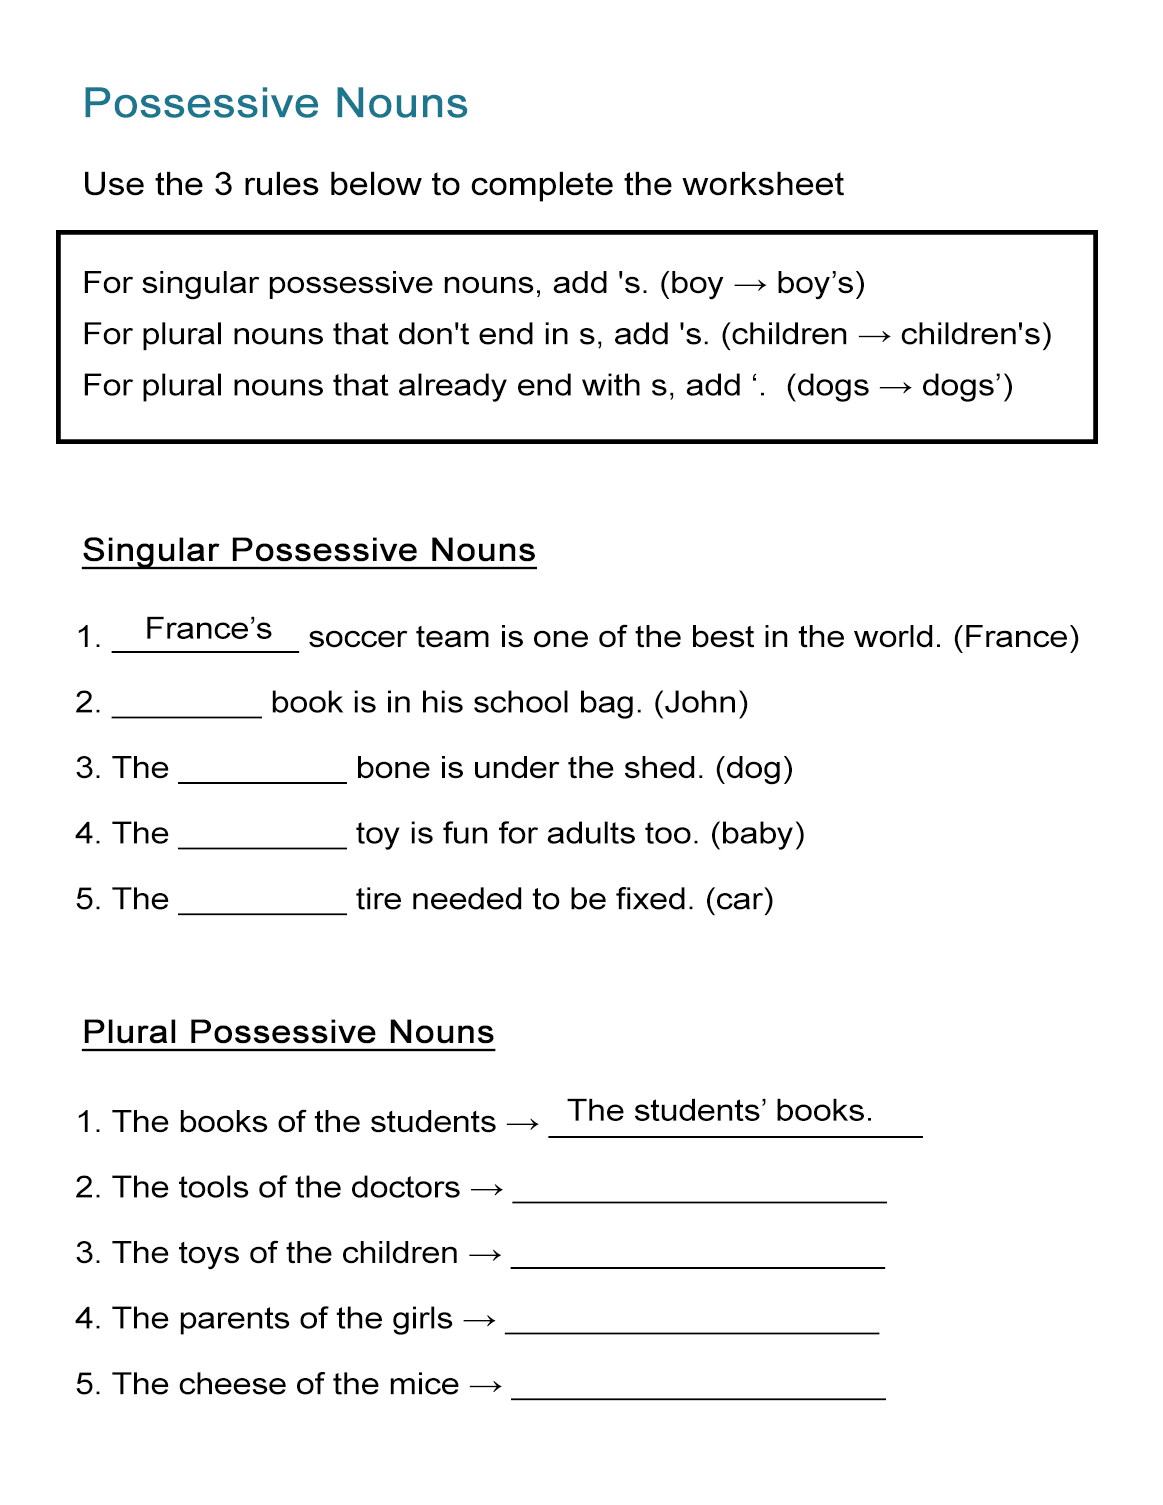 Possessive Nouns Worksheet: Singular and Plural Nouns - ALL ESL Pertaining To Singular Possessive Nouns Worksheet